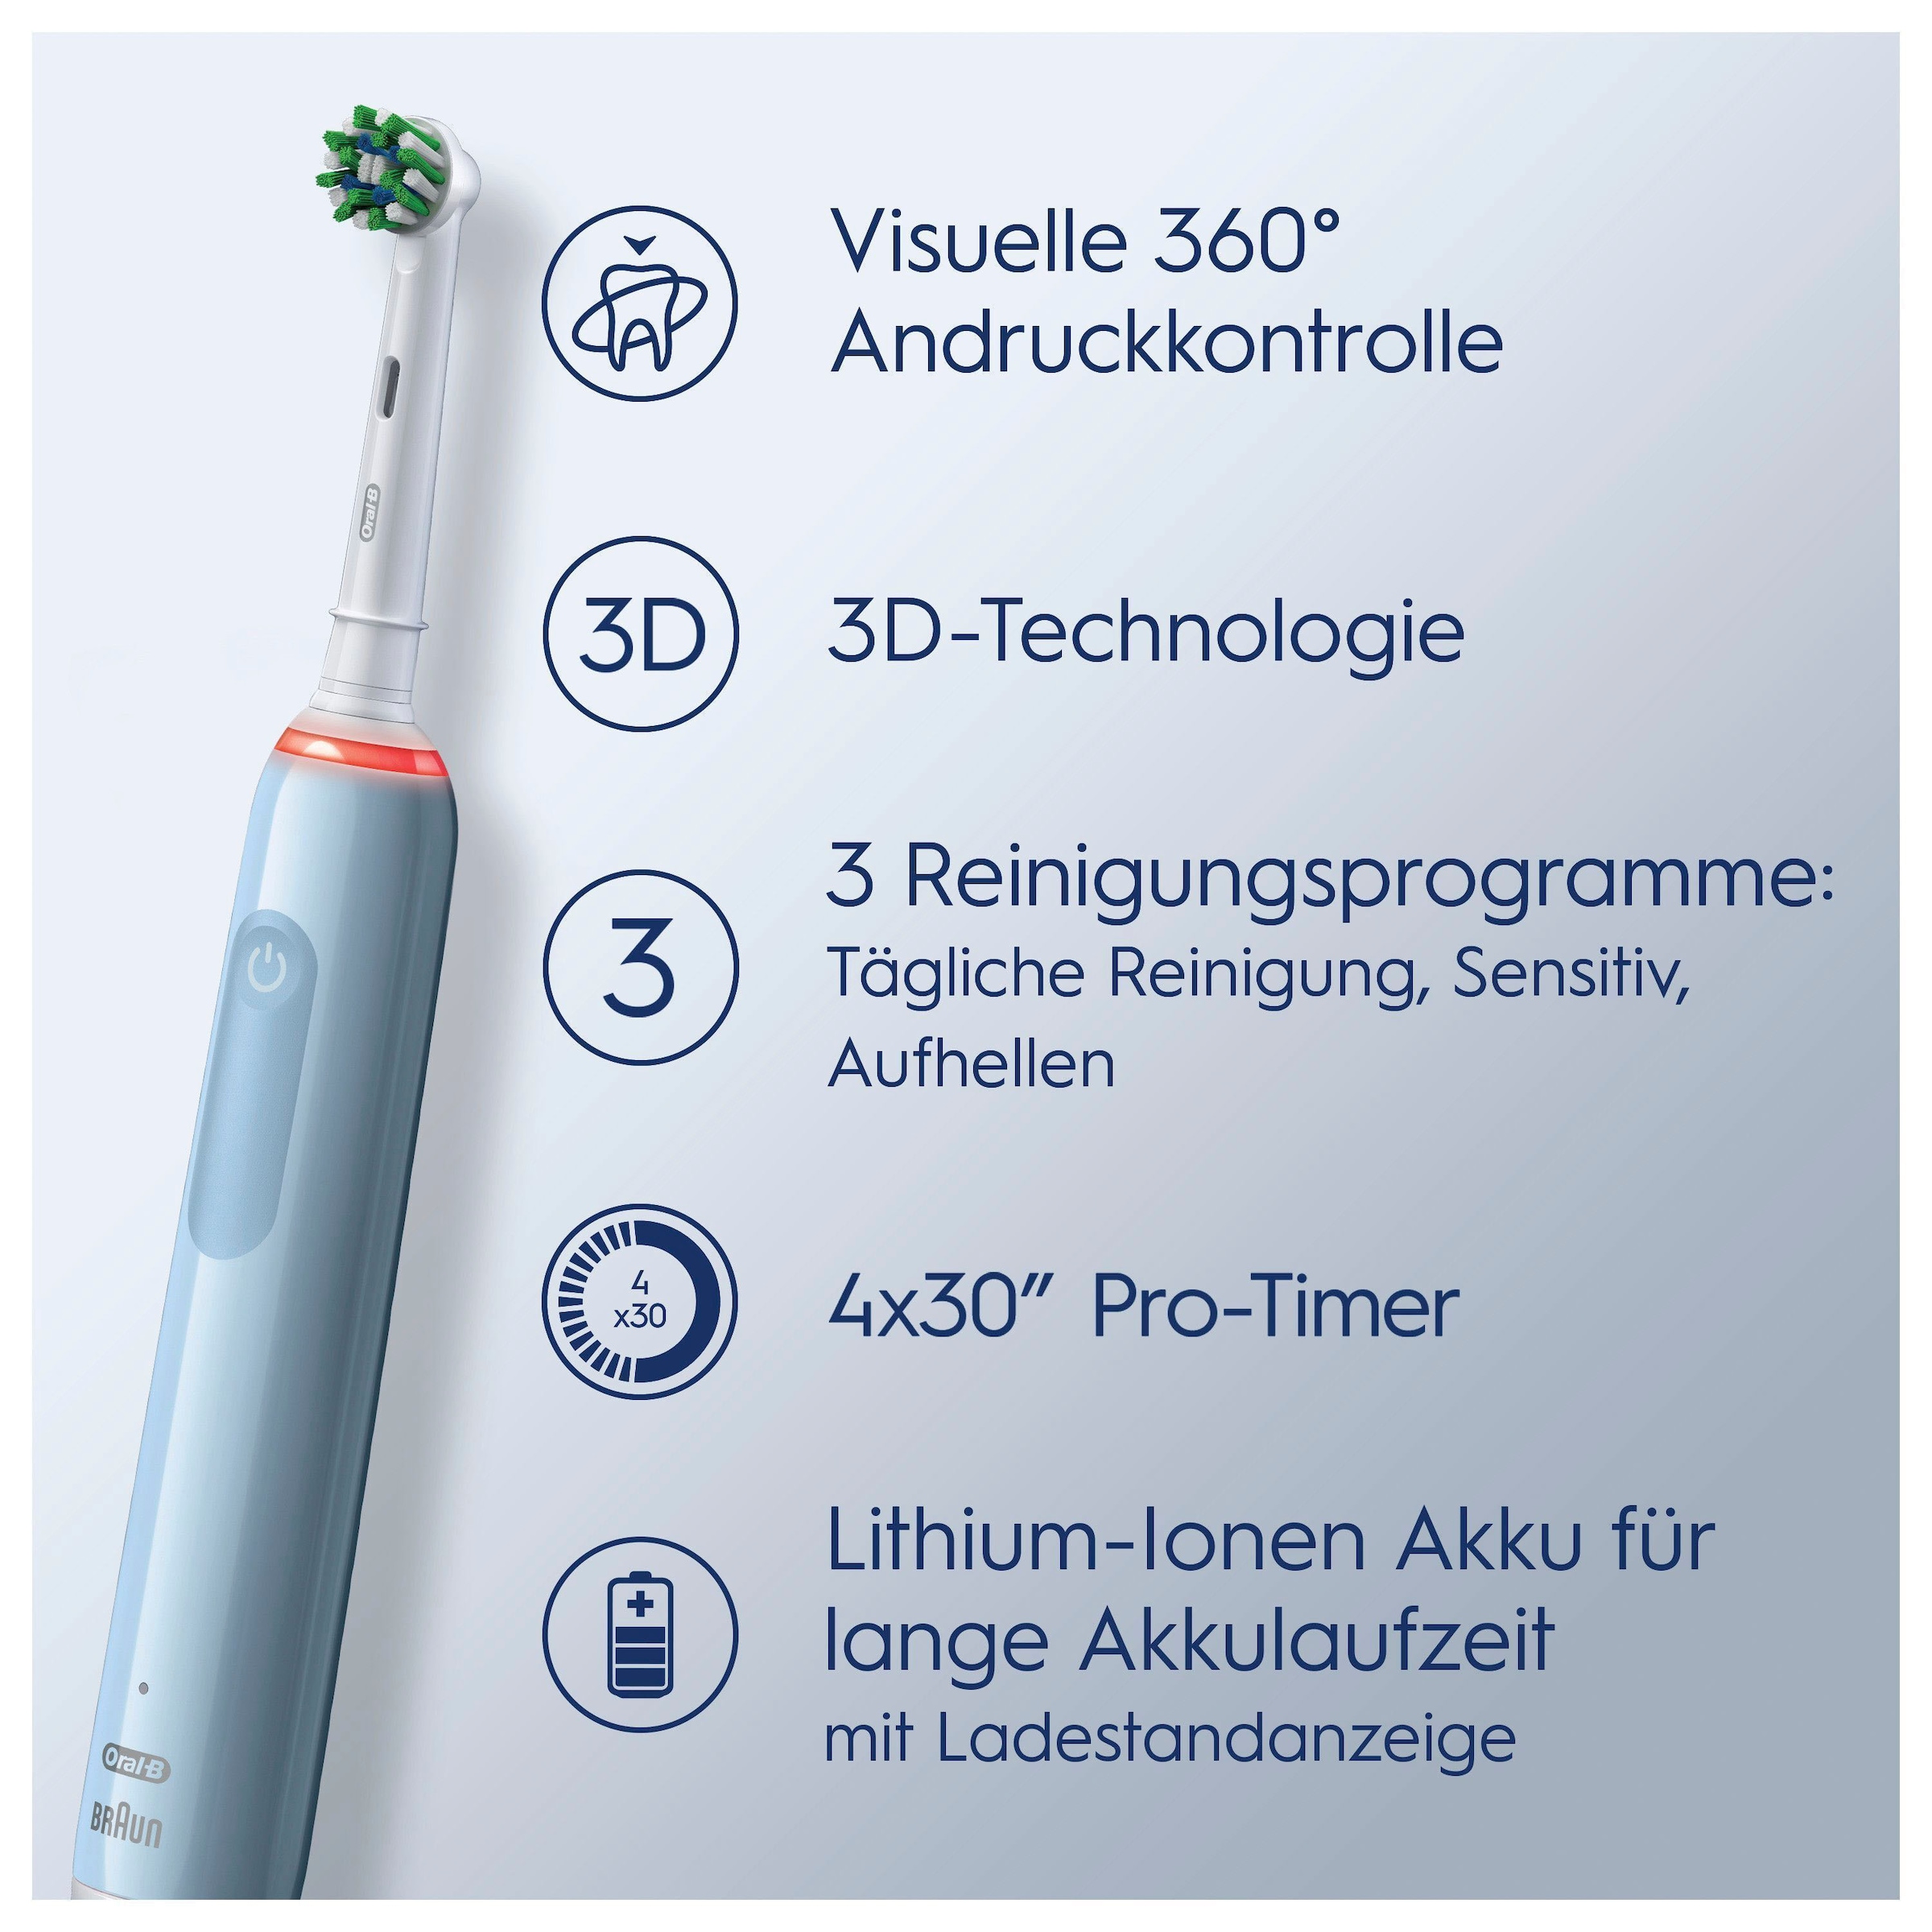 Oral-B Elektrische Zahnbürste »Pro 3 3000«, 2 St. Aufsteckbürsten, 3 Putzmodi